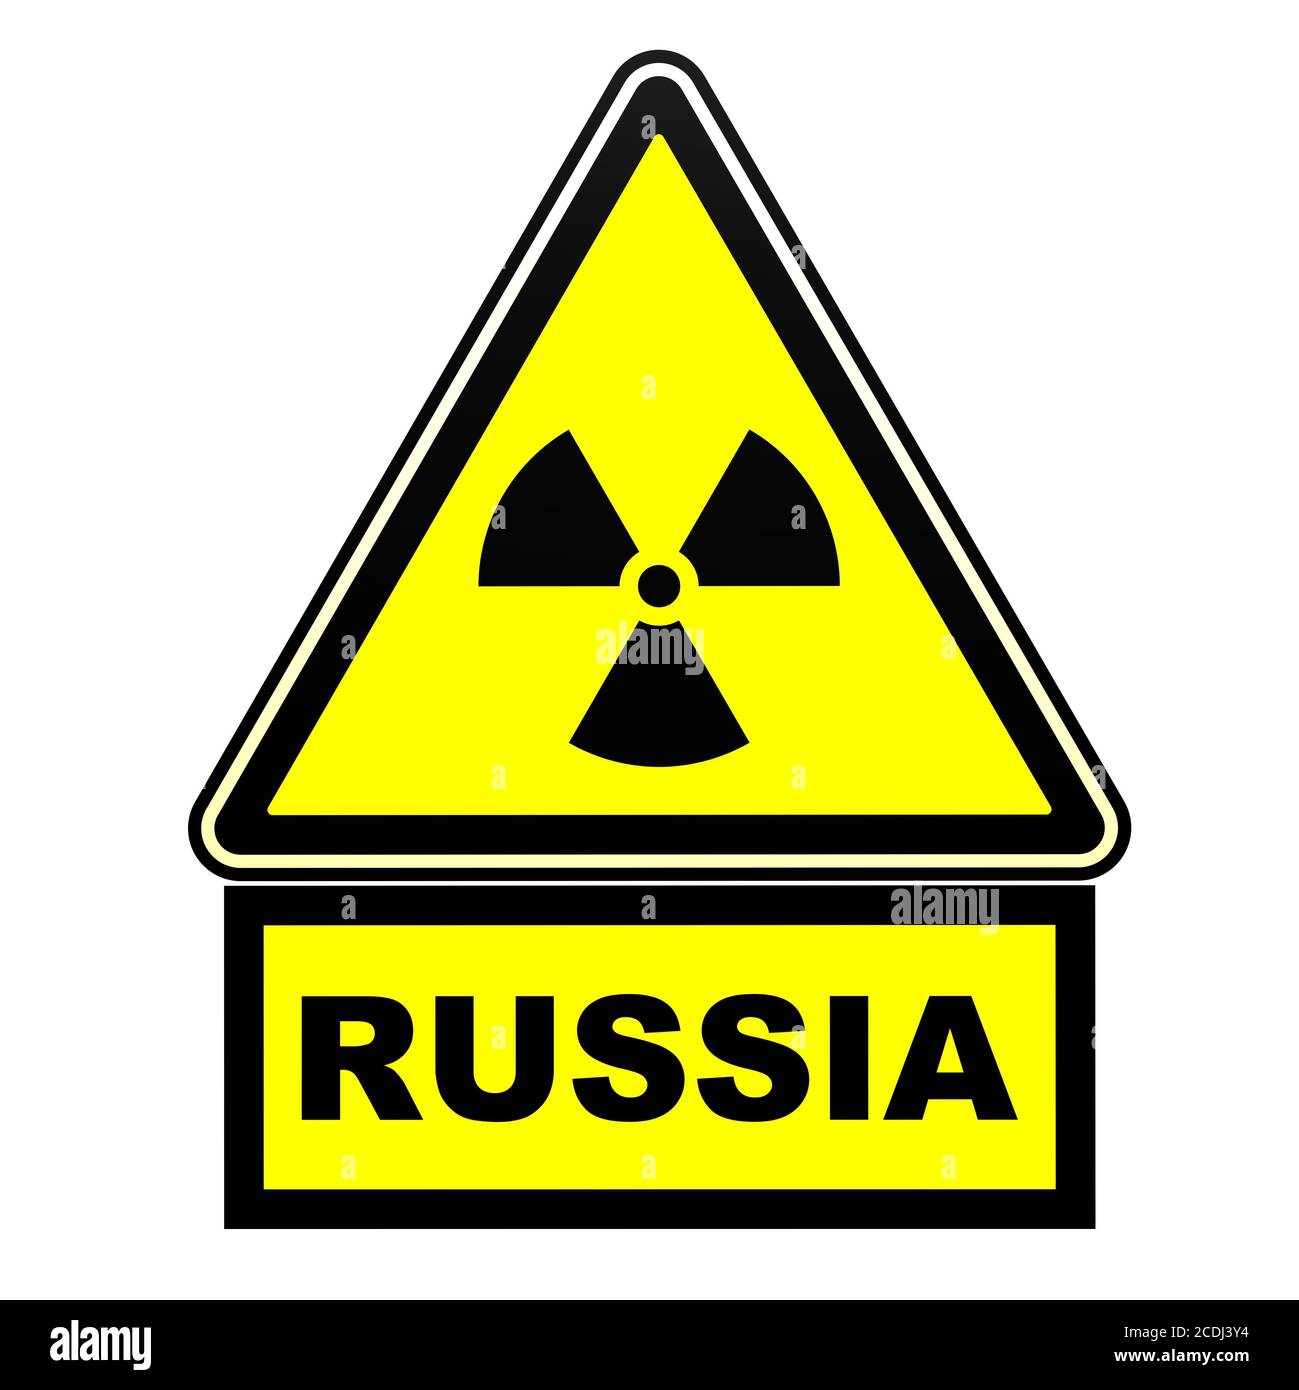 Radioaktive Gefahr in Russland. Warnschild. Ein gelbes Warnzeichen der radioaktiven Gefahr mit dem schwarzen Wort Russland. Isoliert. 3D-Illustration Stockfoto